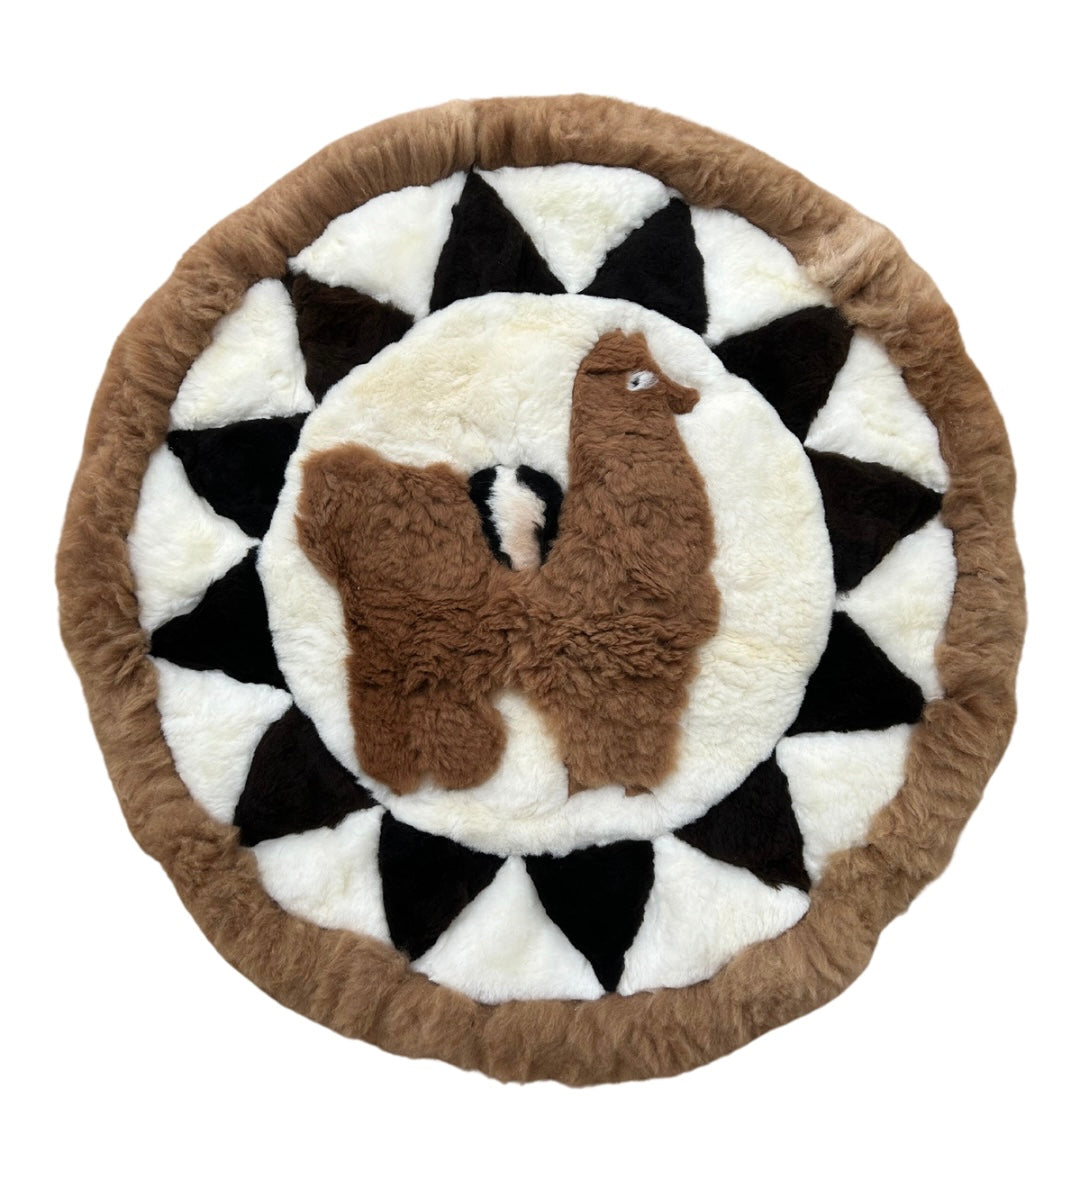 100% soft alpaca rug